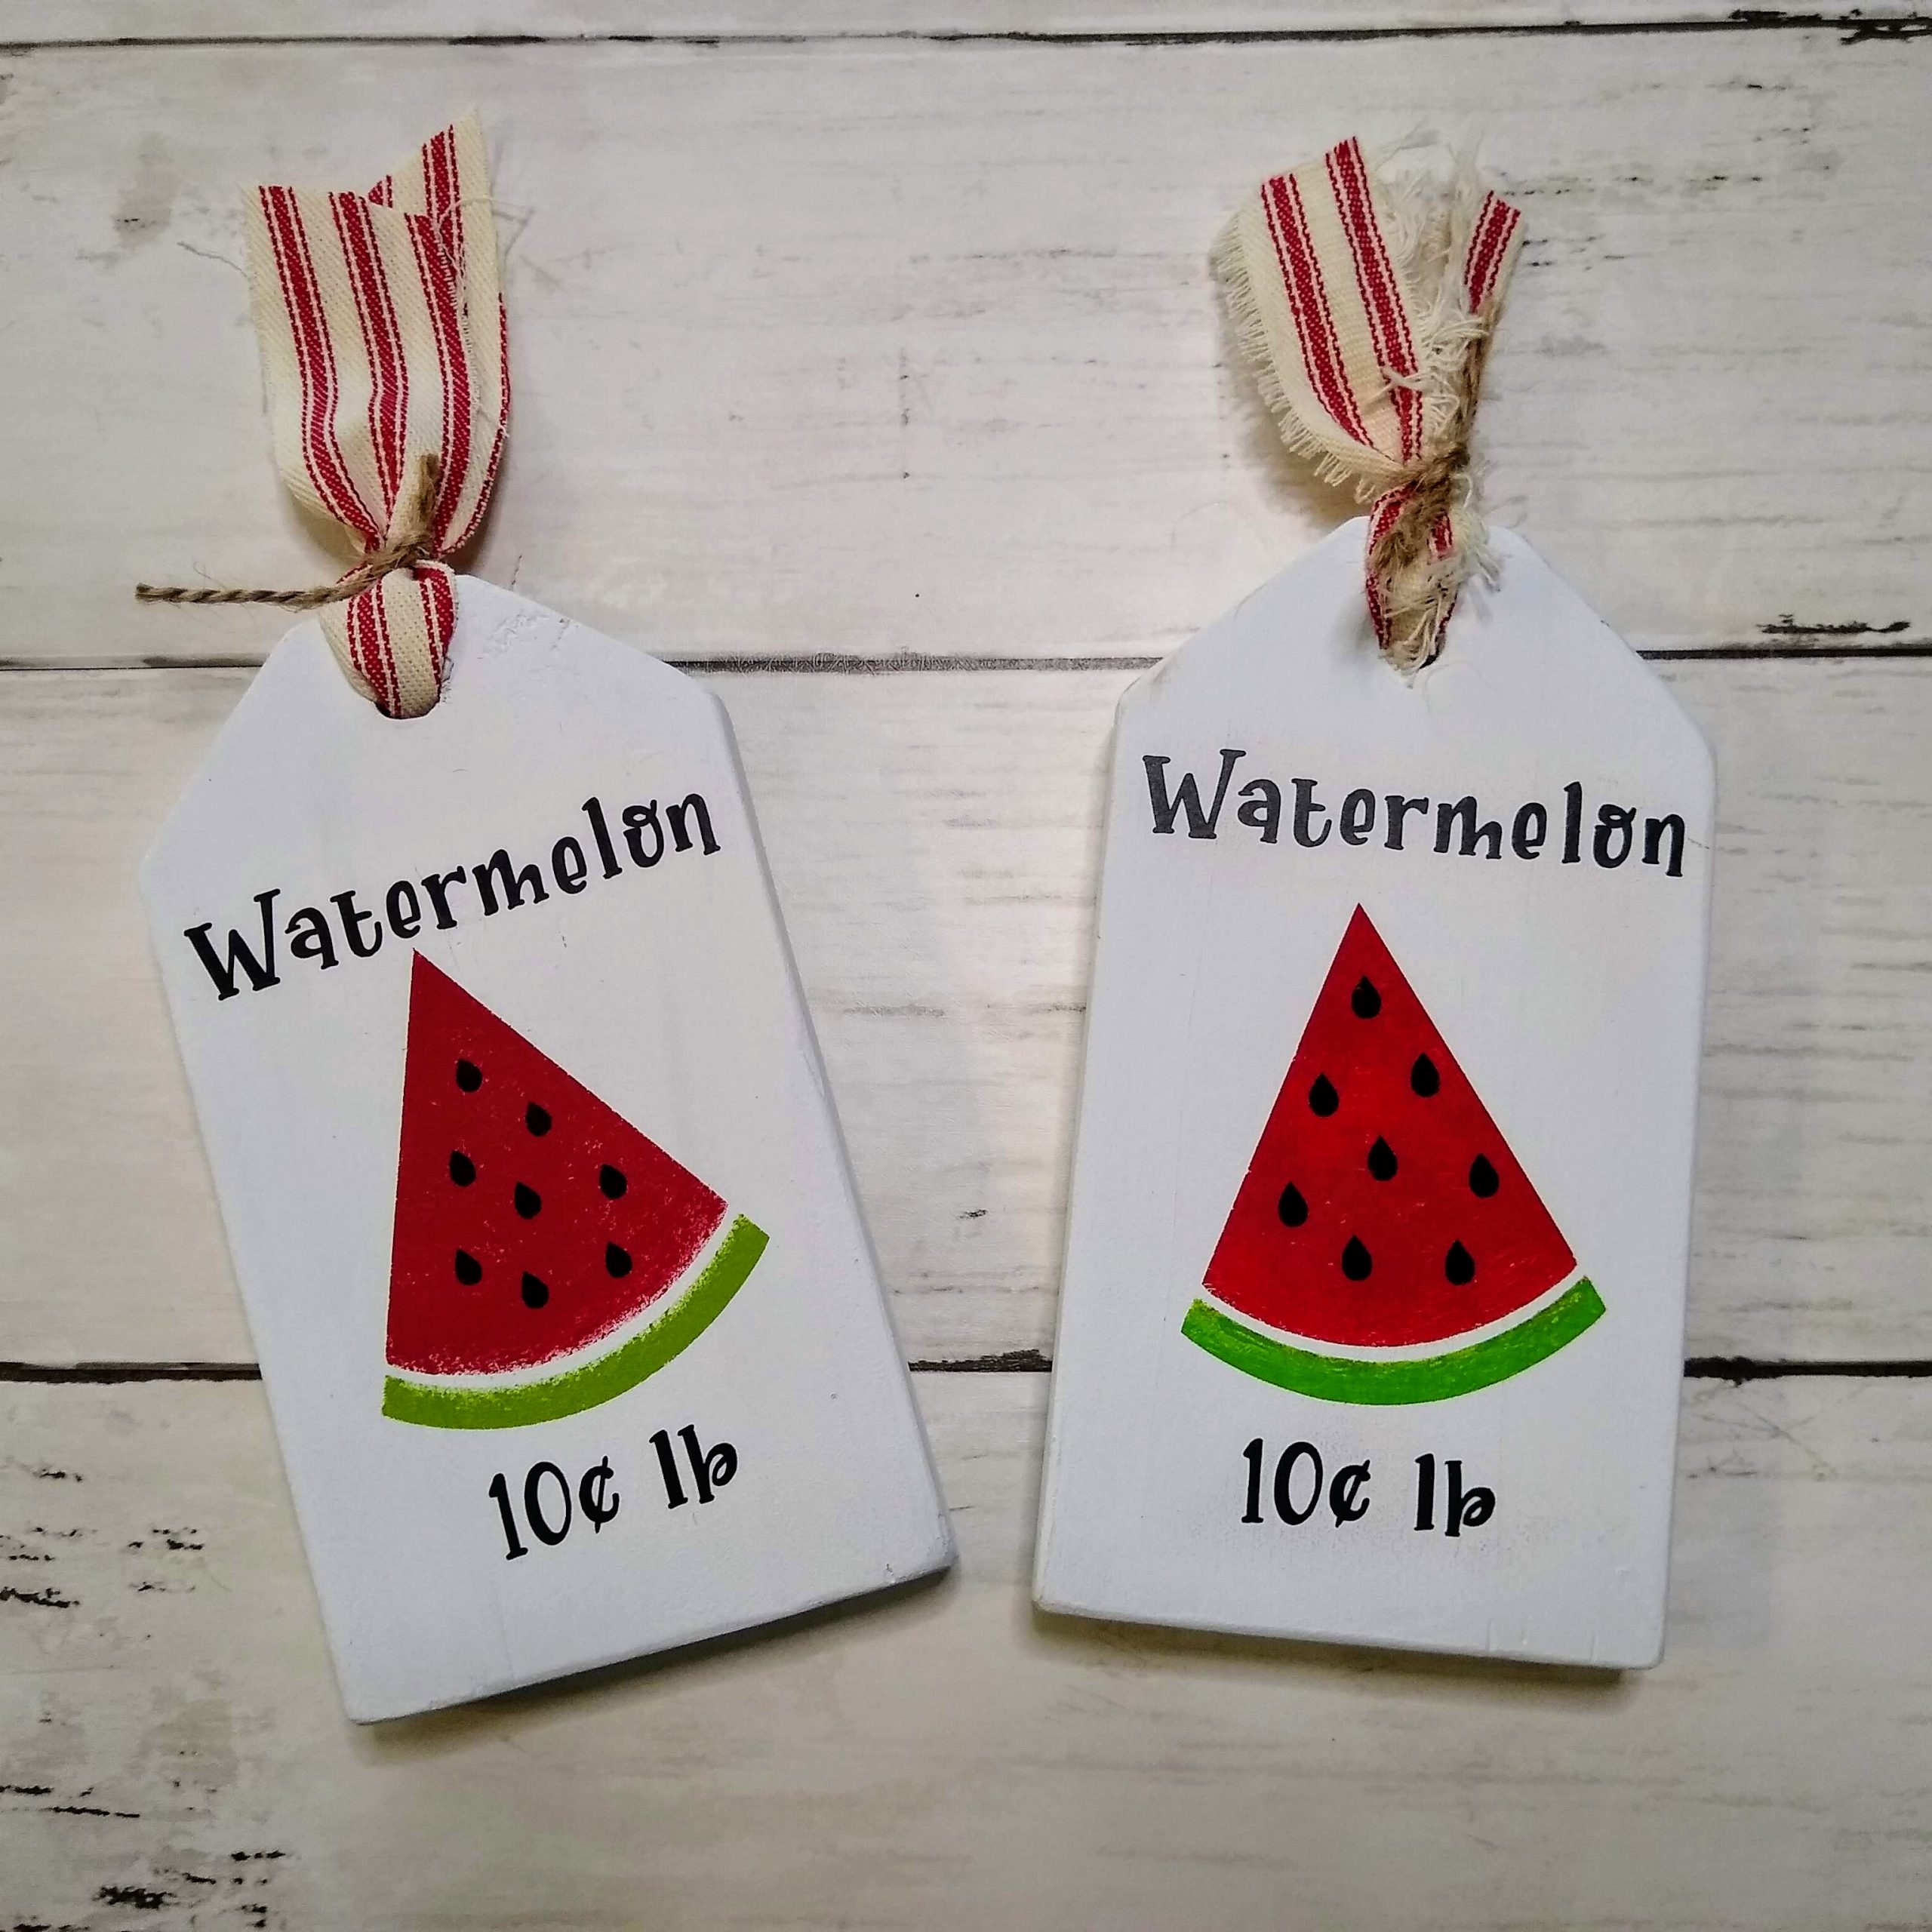 Watermelon Theme Wood Tags Create watermelon themed farmhouse tray decor